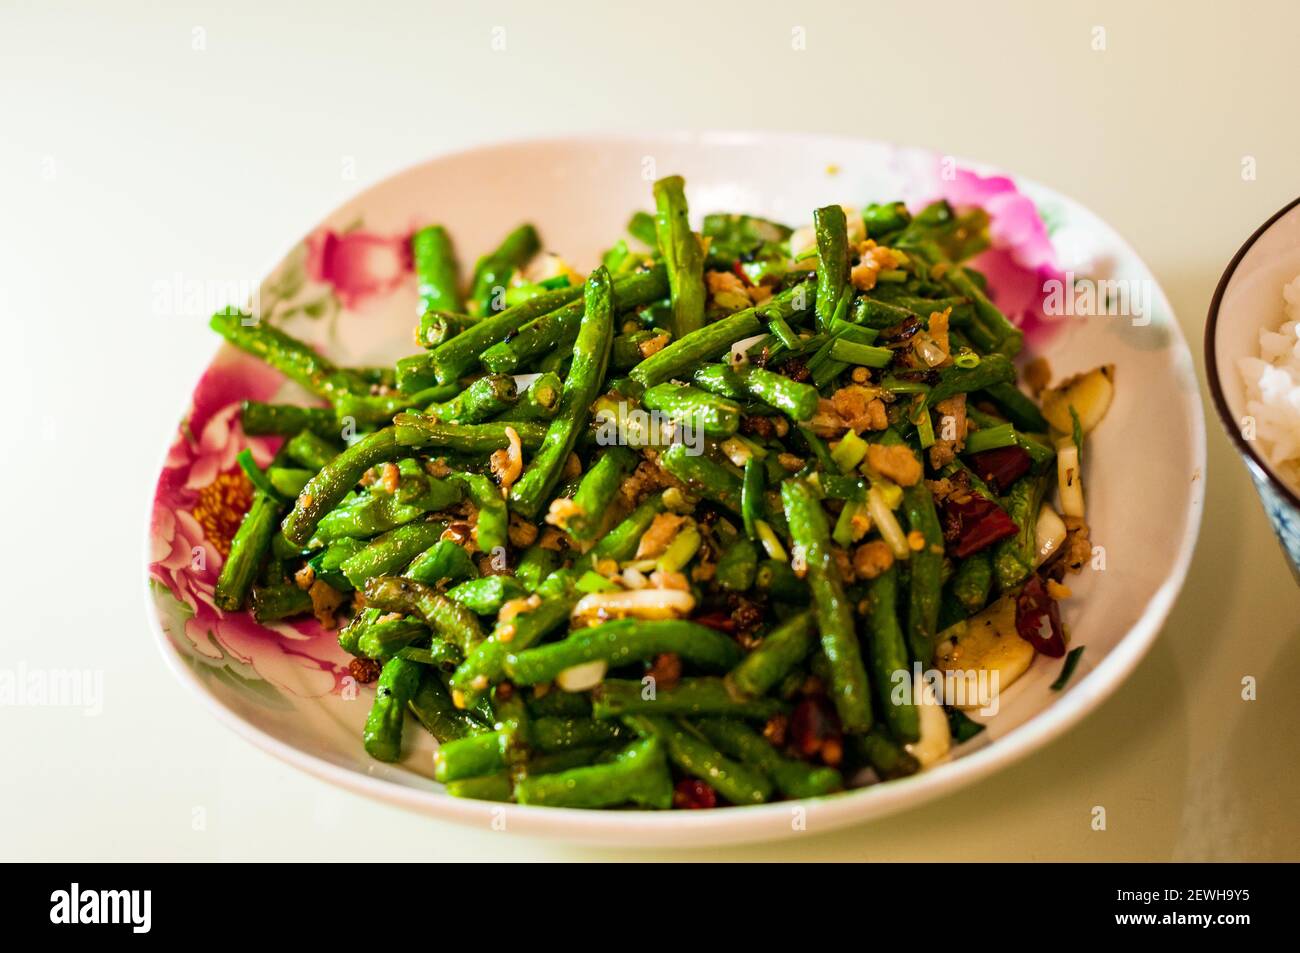 Das Sichuan klassische Gericht aus getrockneten gebratenen Schlangenbohnen, gekocht mit Omipork, einem pflanzlichen Fleischersatz in seiner ‘Hackfleisch’ Form. Stockfoto